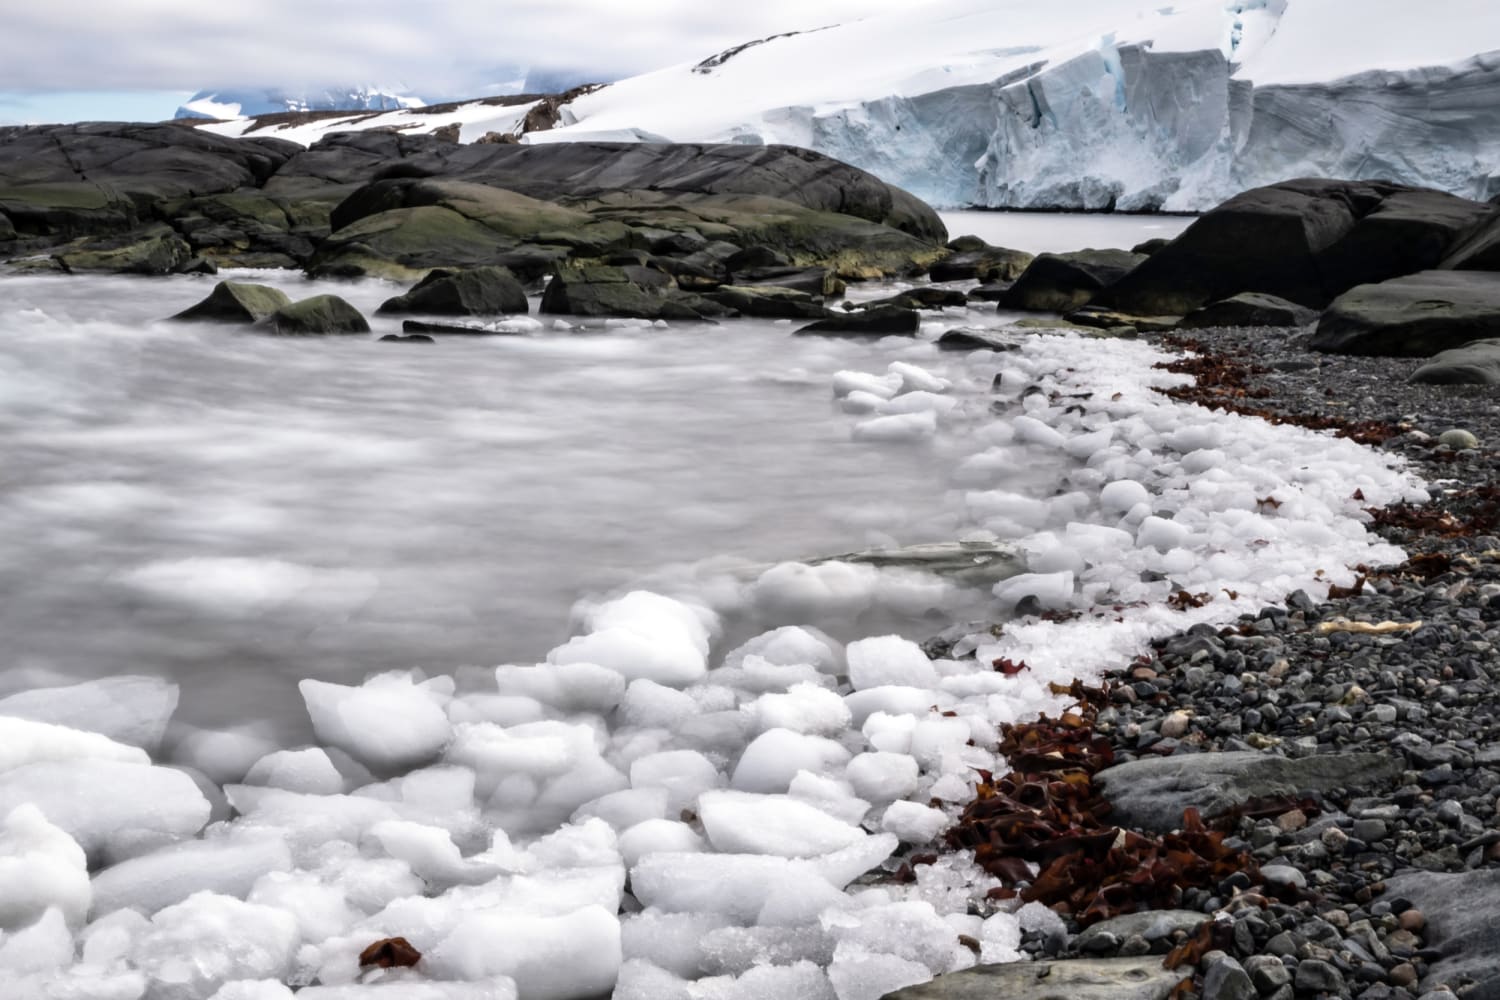 Sono stati rivelati antichi paesaggi modellati dai fiumi nelle profondità del ghiaccio antartico